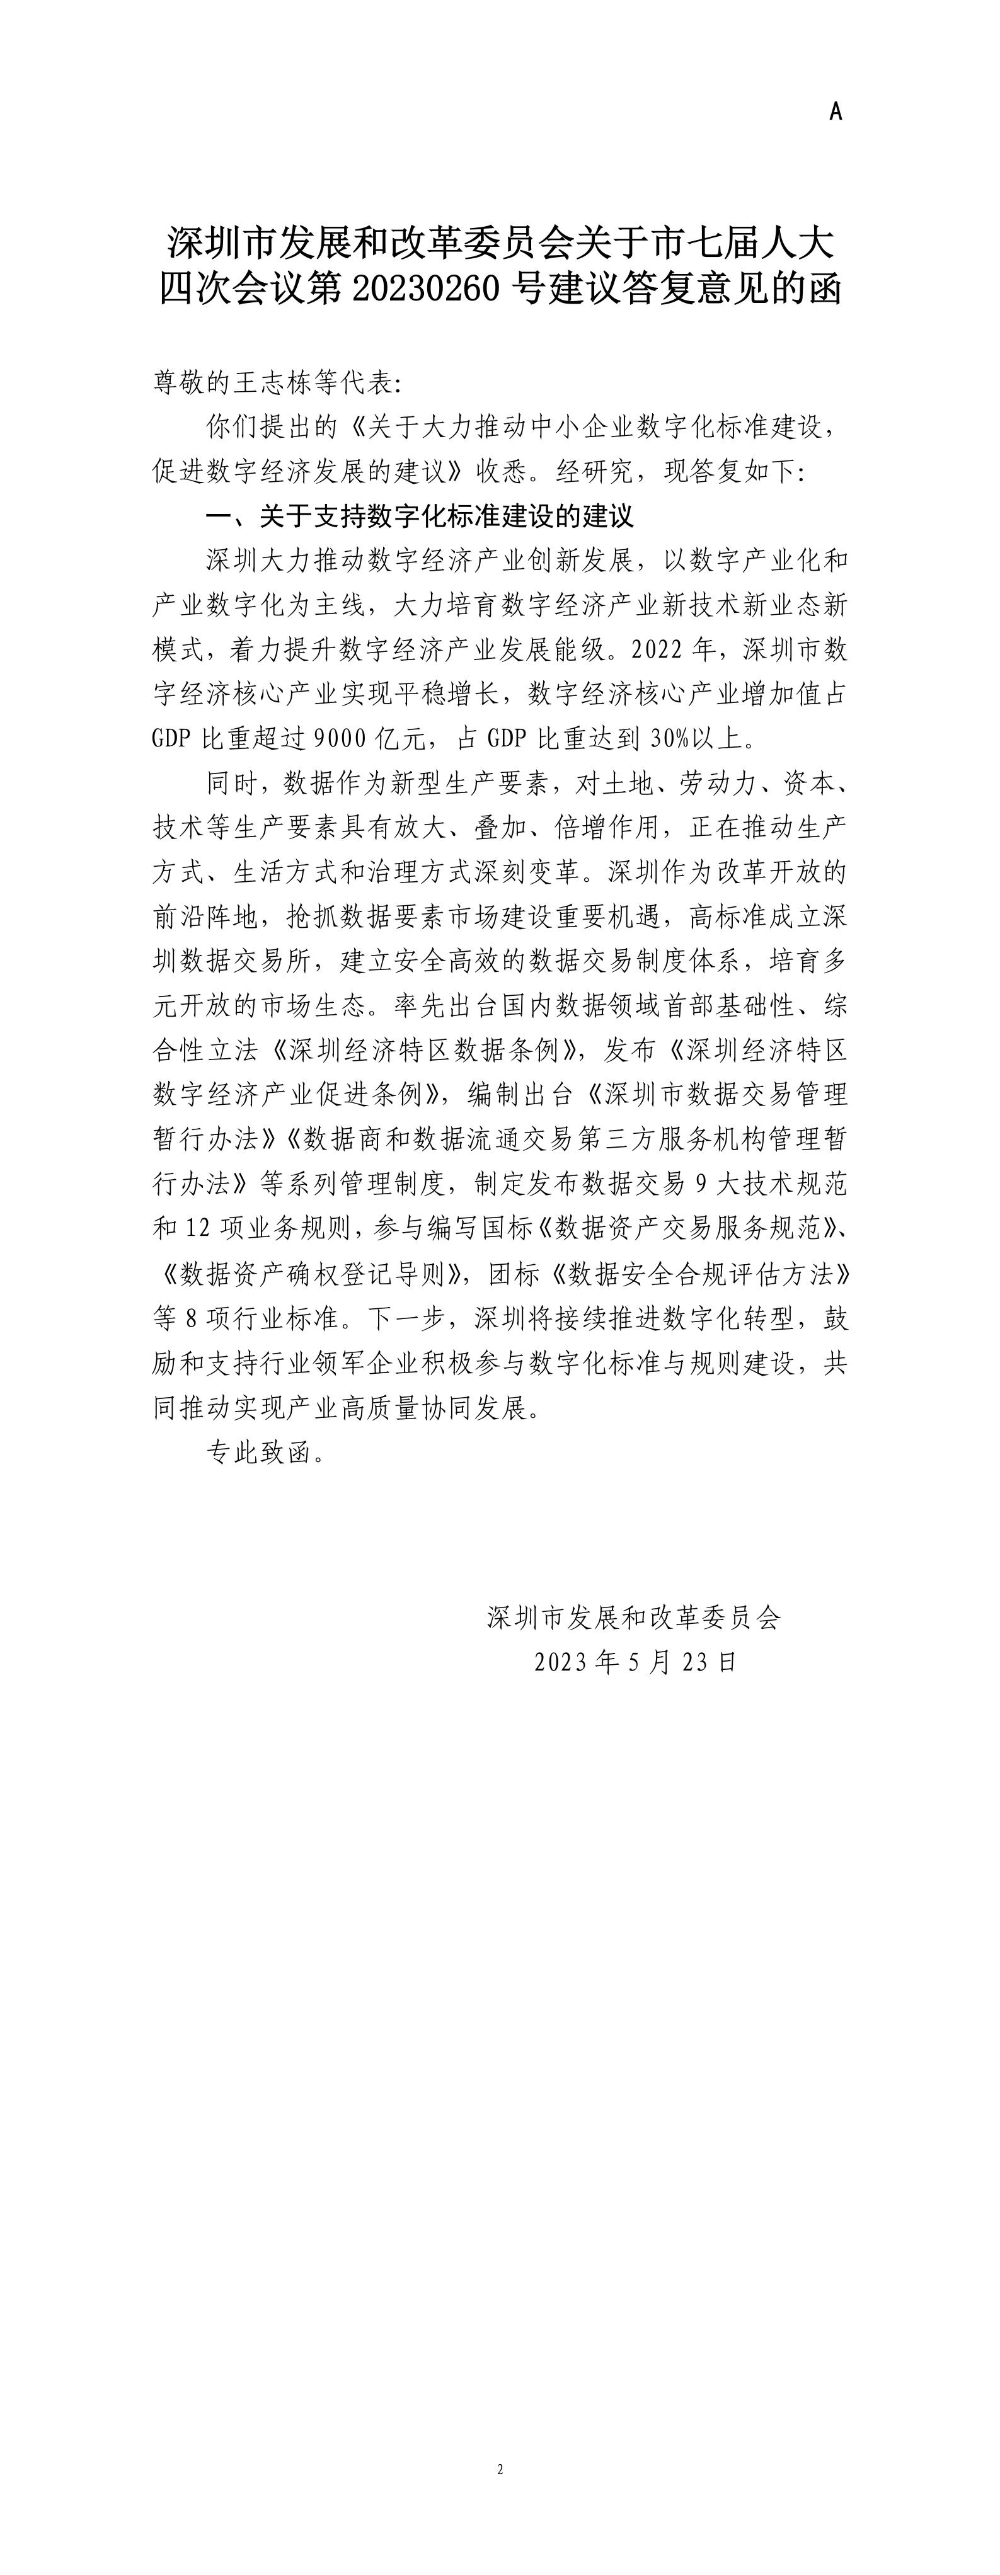 深圳市发展和改革委员会关于市七届人大四次会议第20230260号建议答复意见的函.jpg